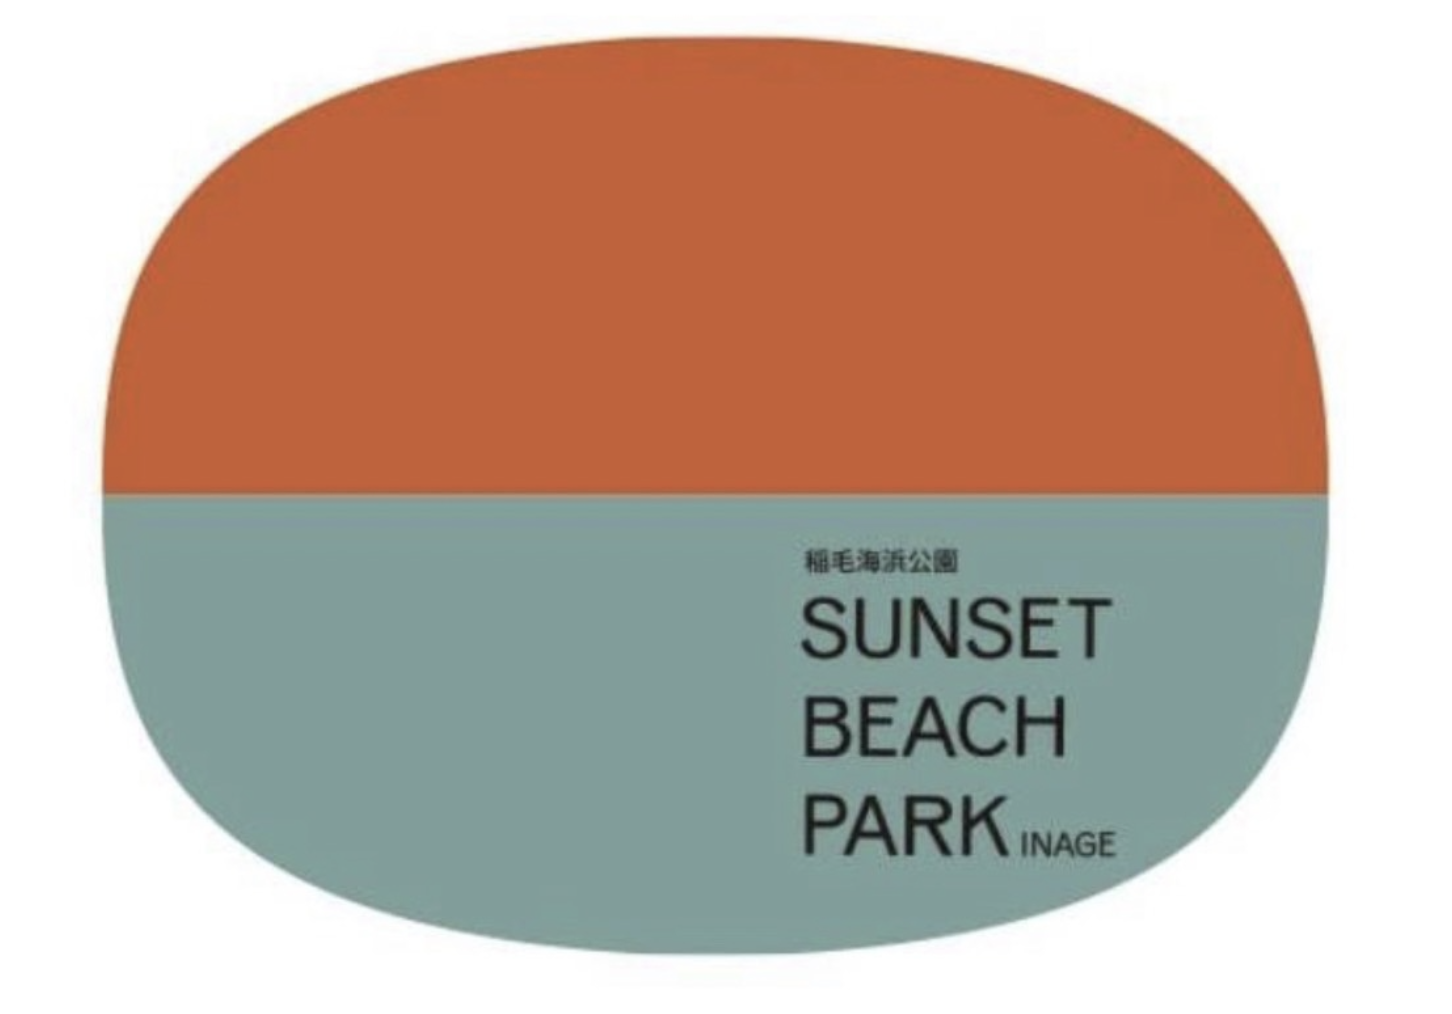 イベント情報 | SUNSET BEACH PARK INAGE